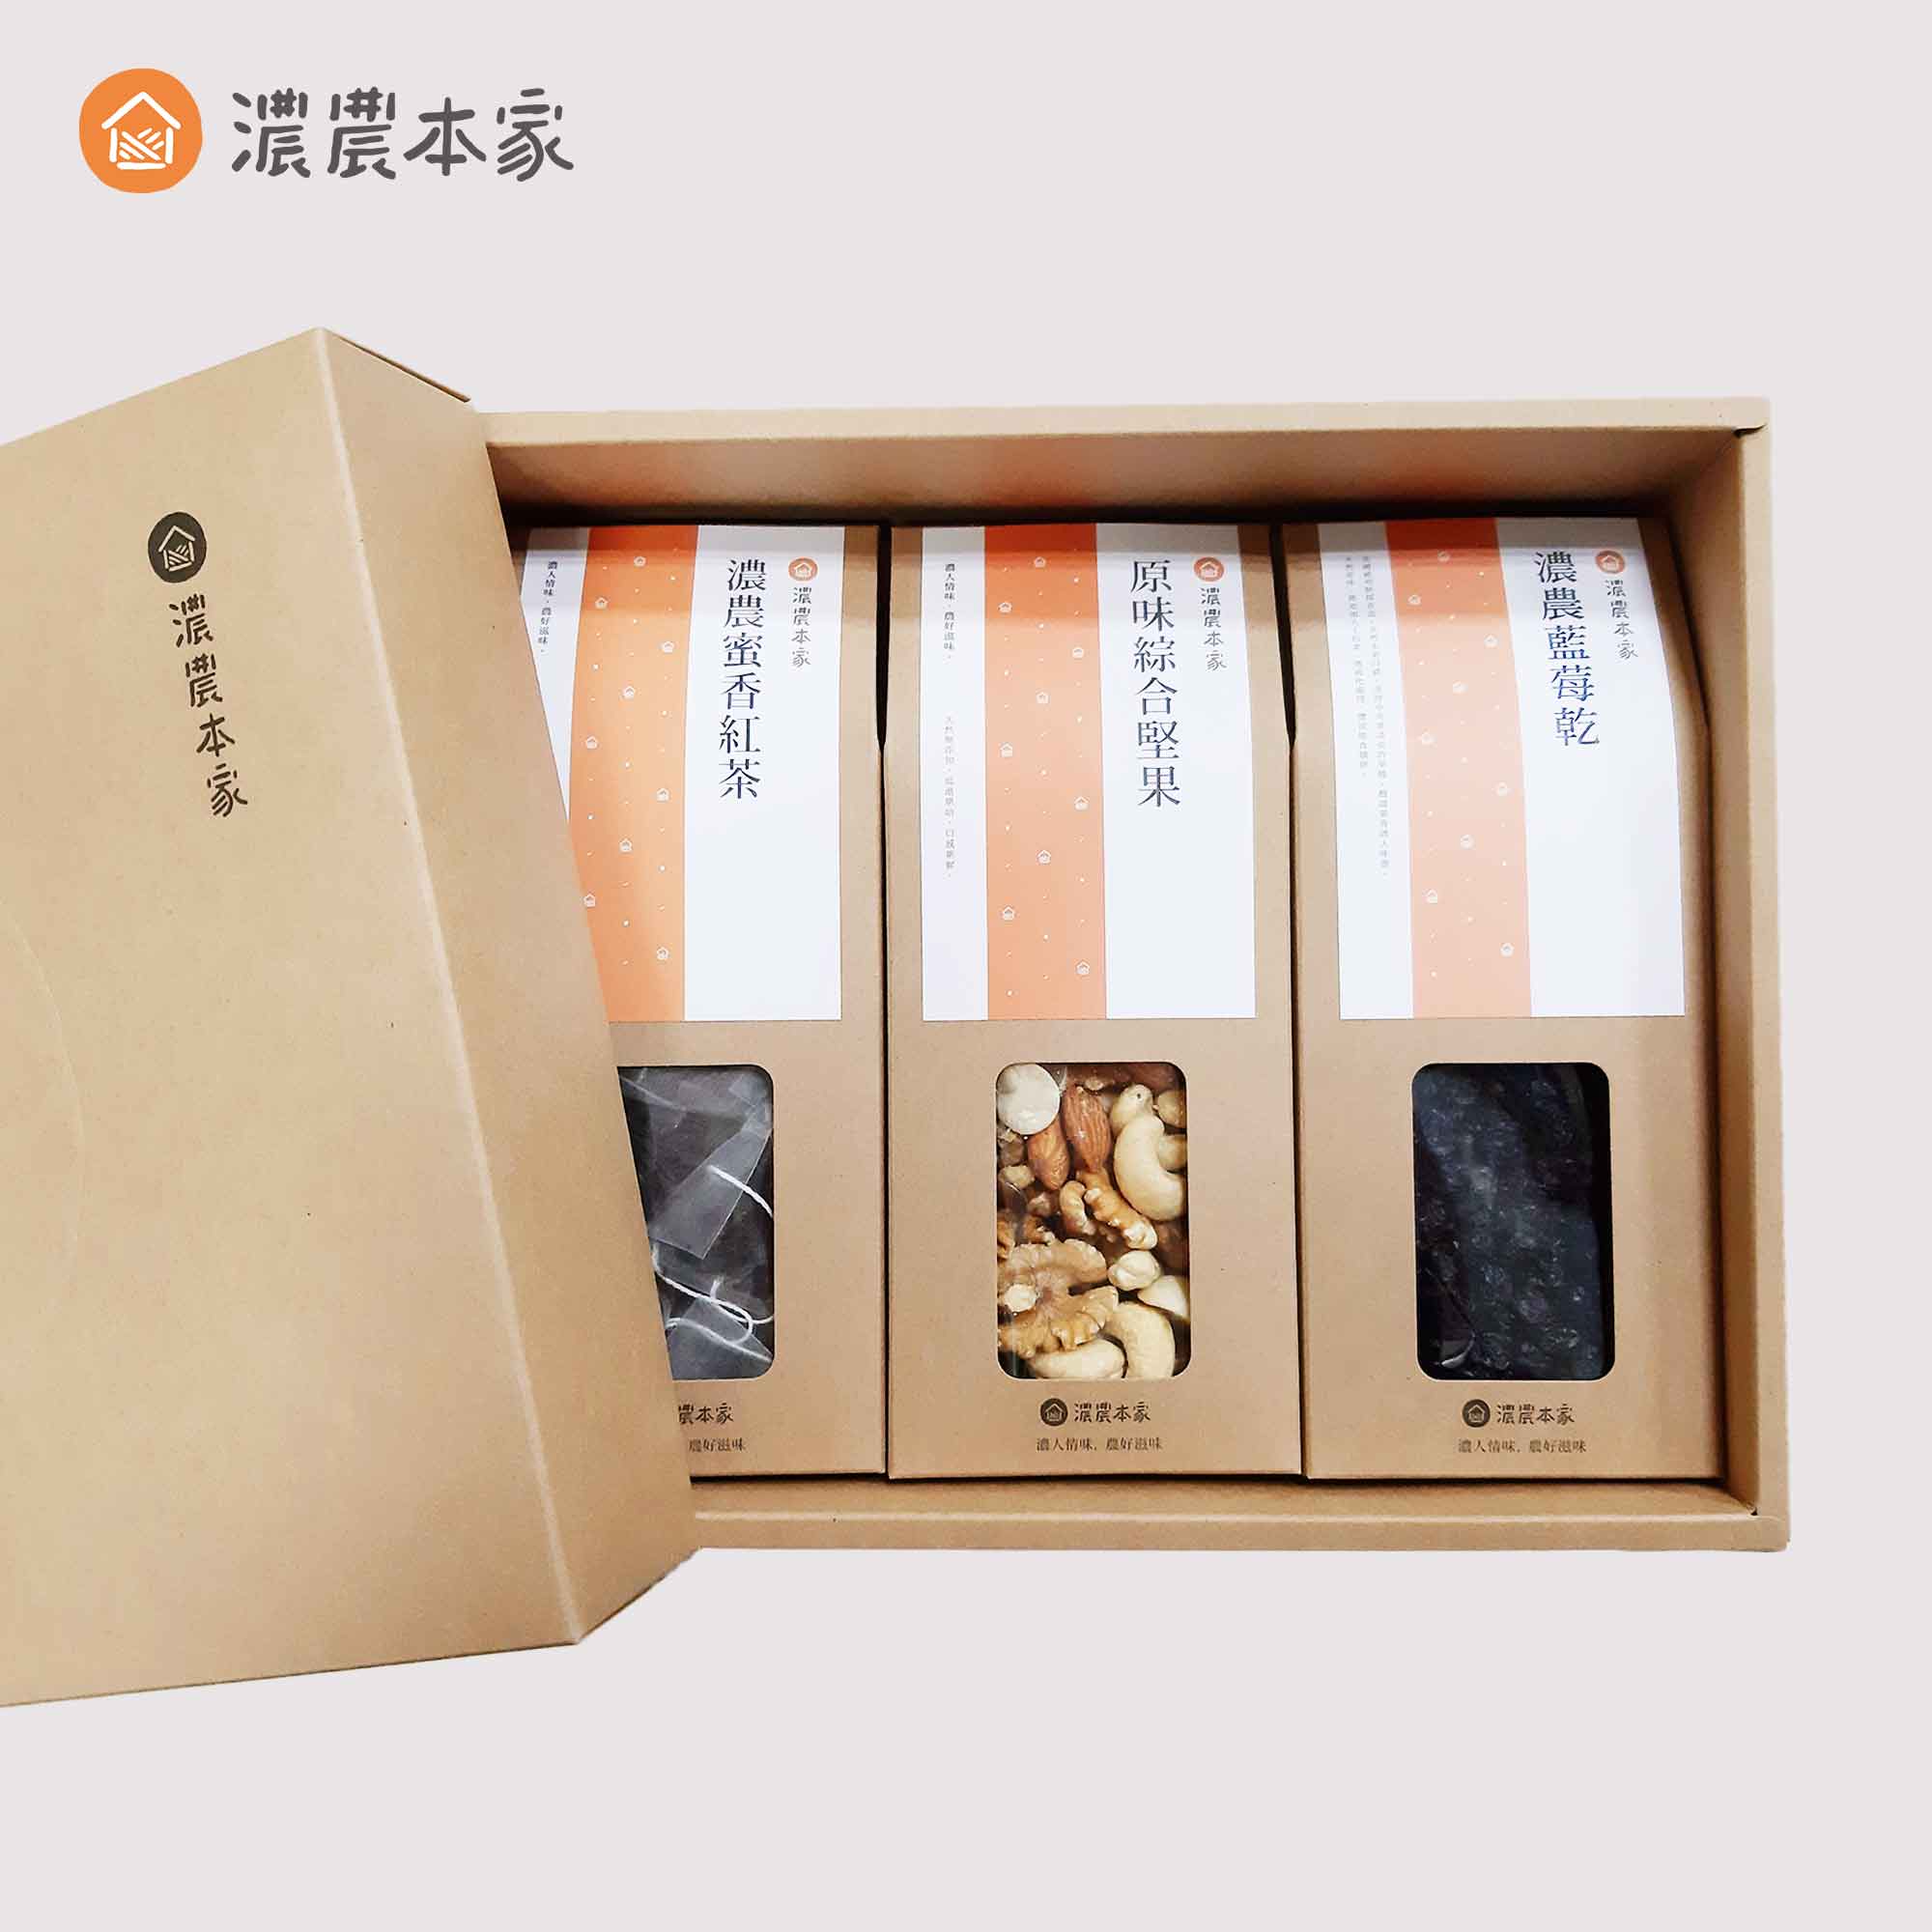 香港人來台灣必買的台灣特色手信推薦健康禮盒